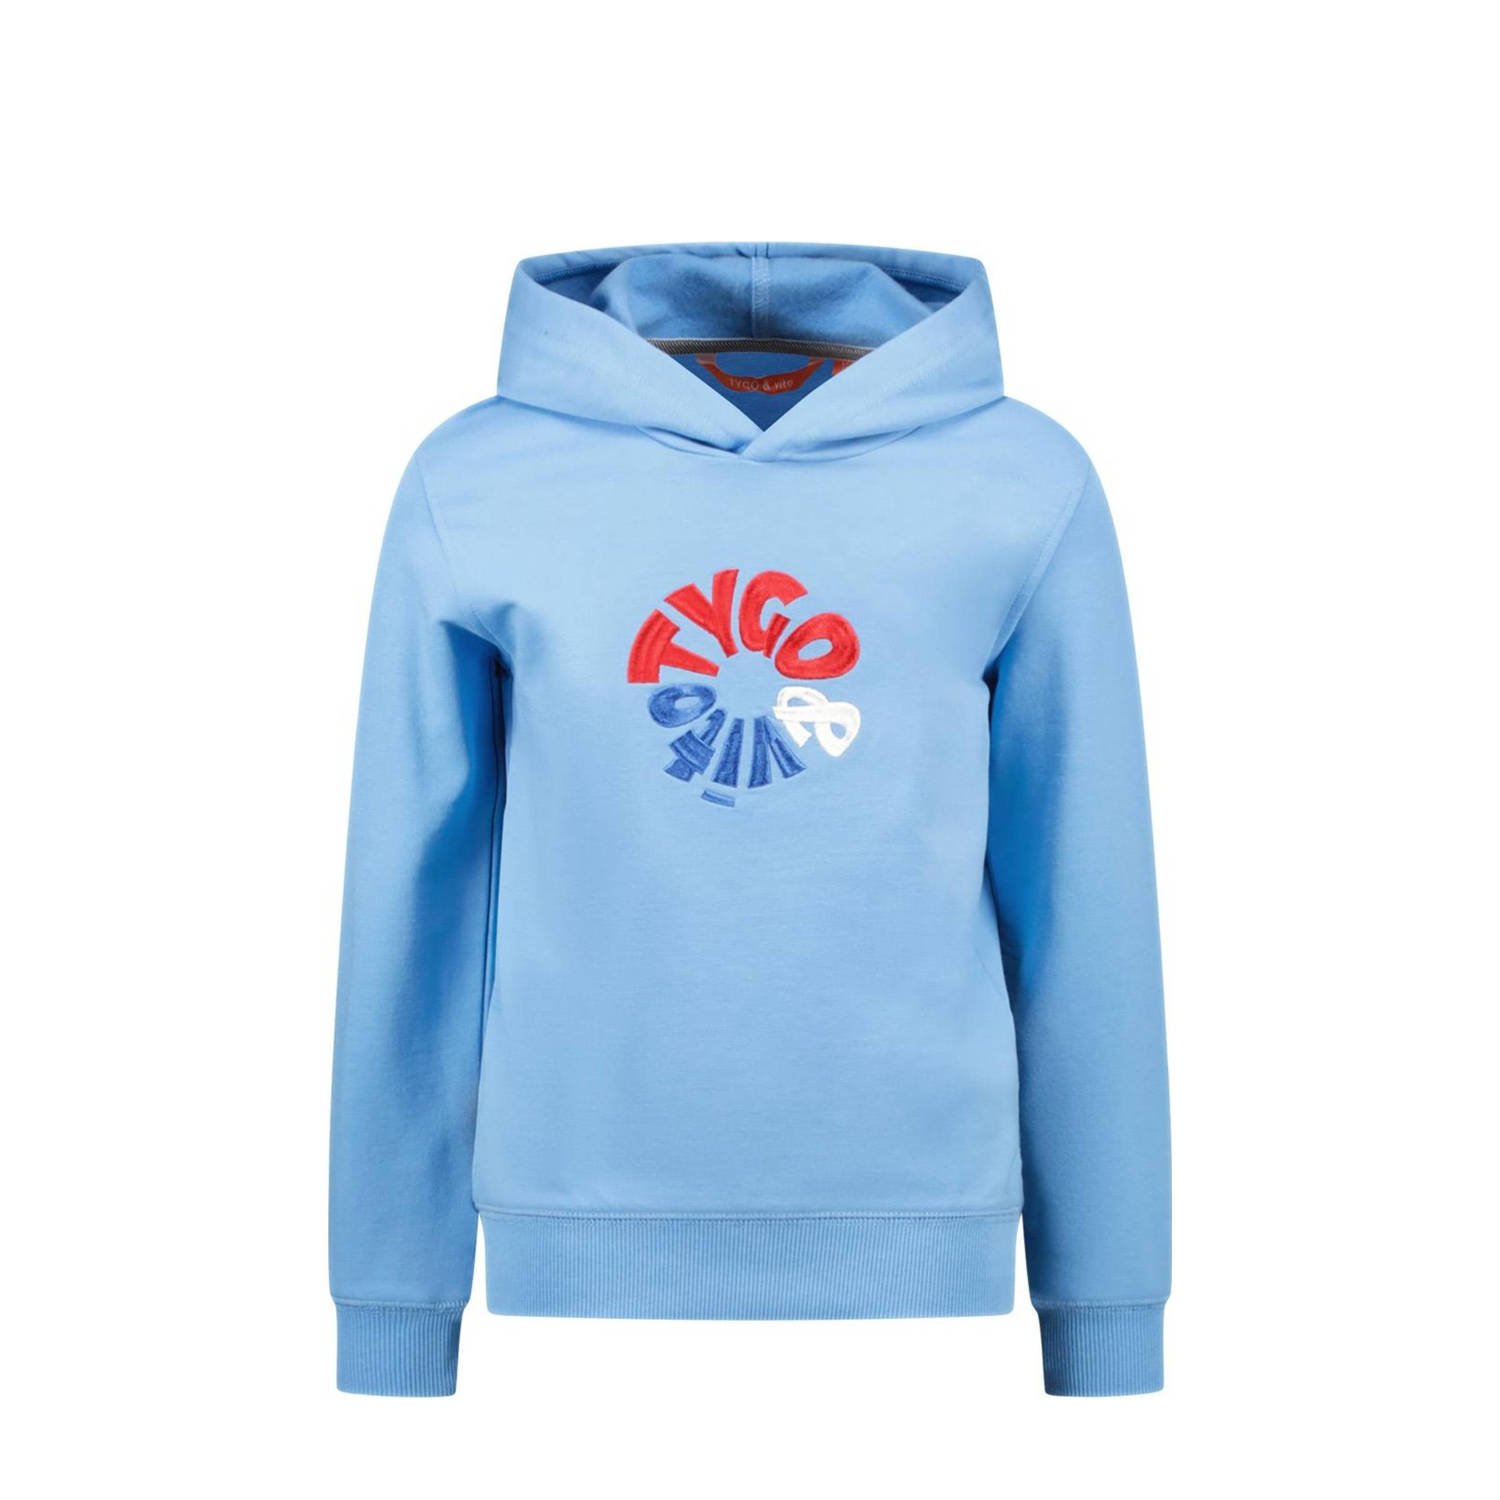 TYGO & vito hoodie Hamza met logo lichtblauw milti Sweater Logo 110 116